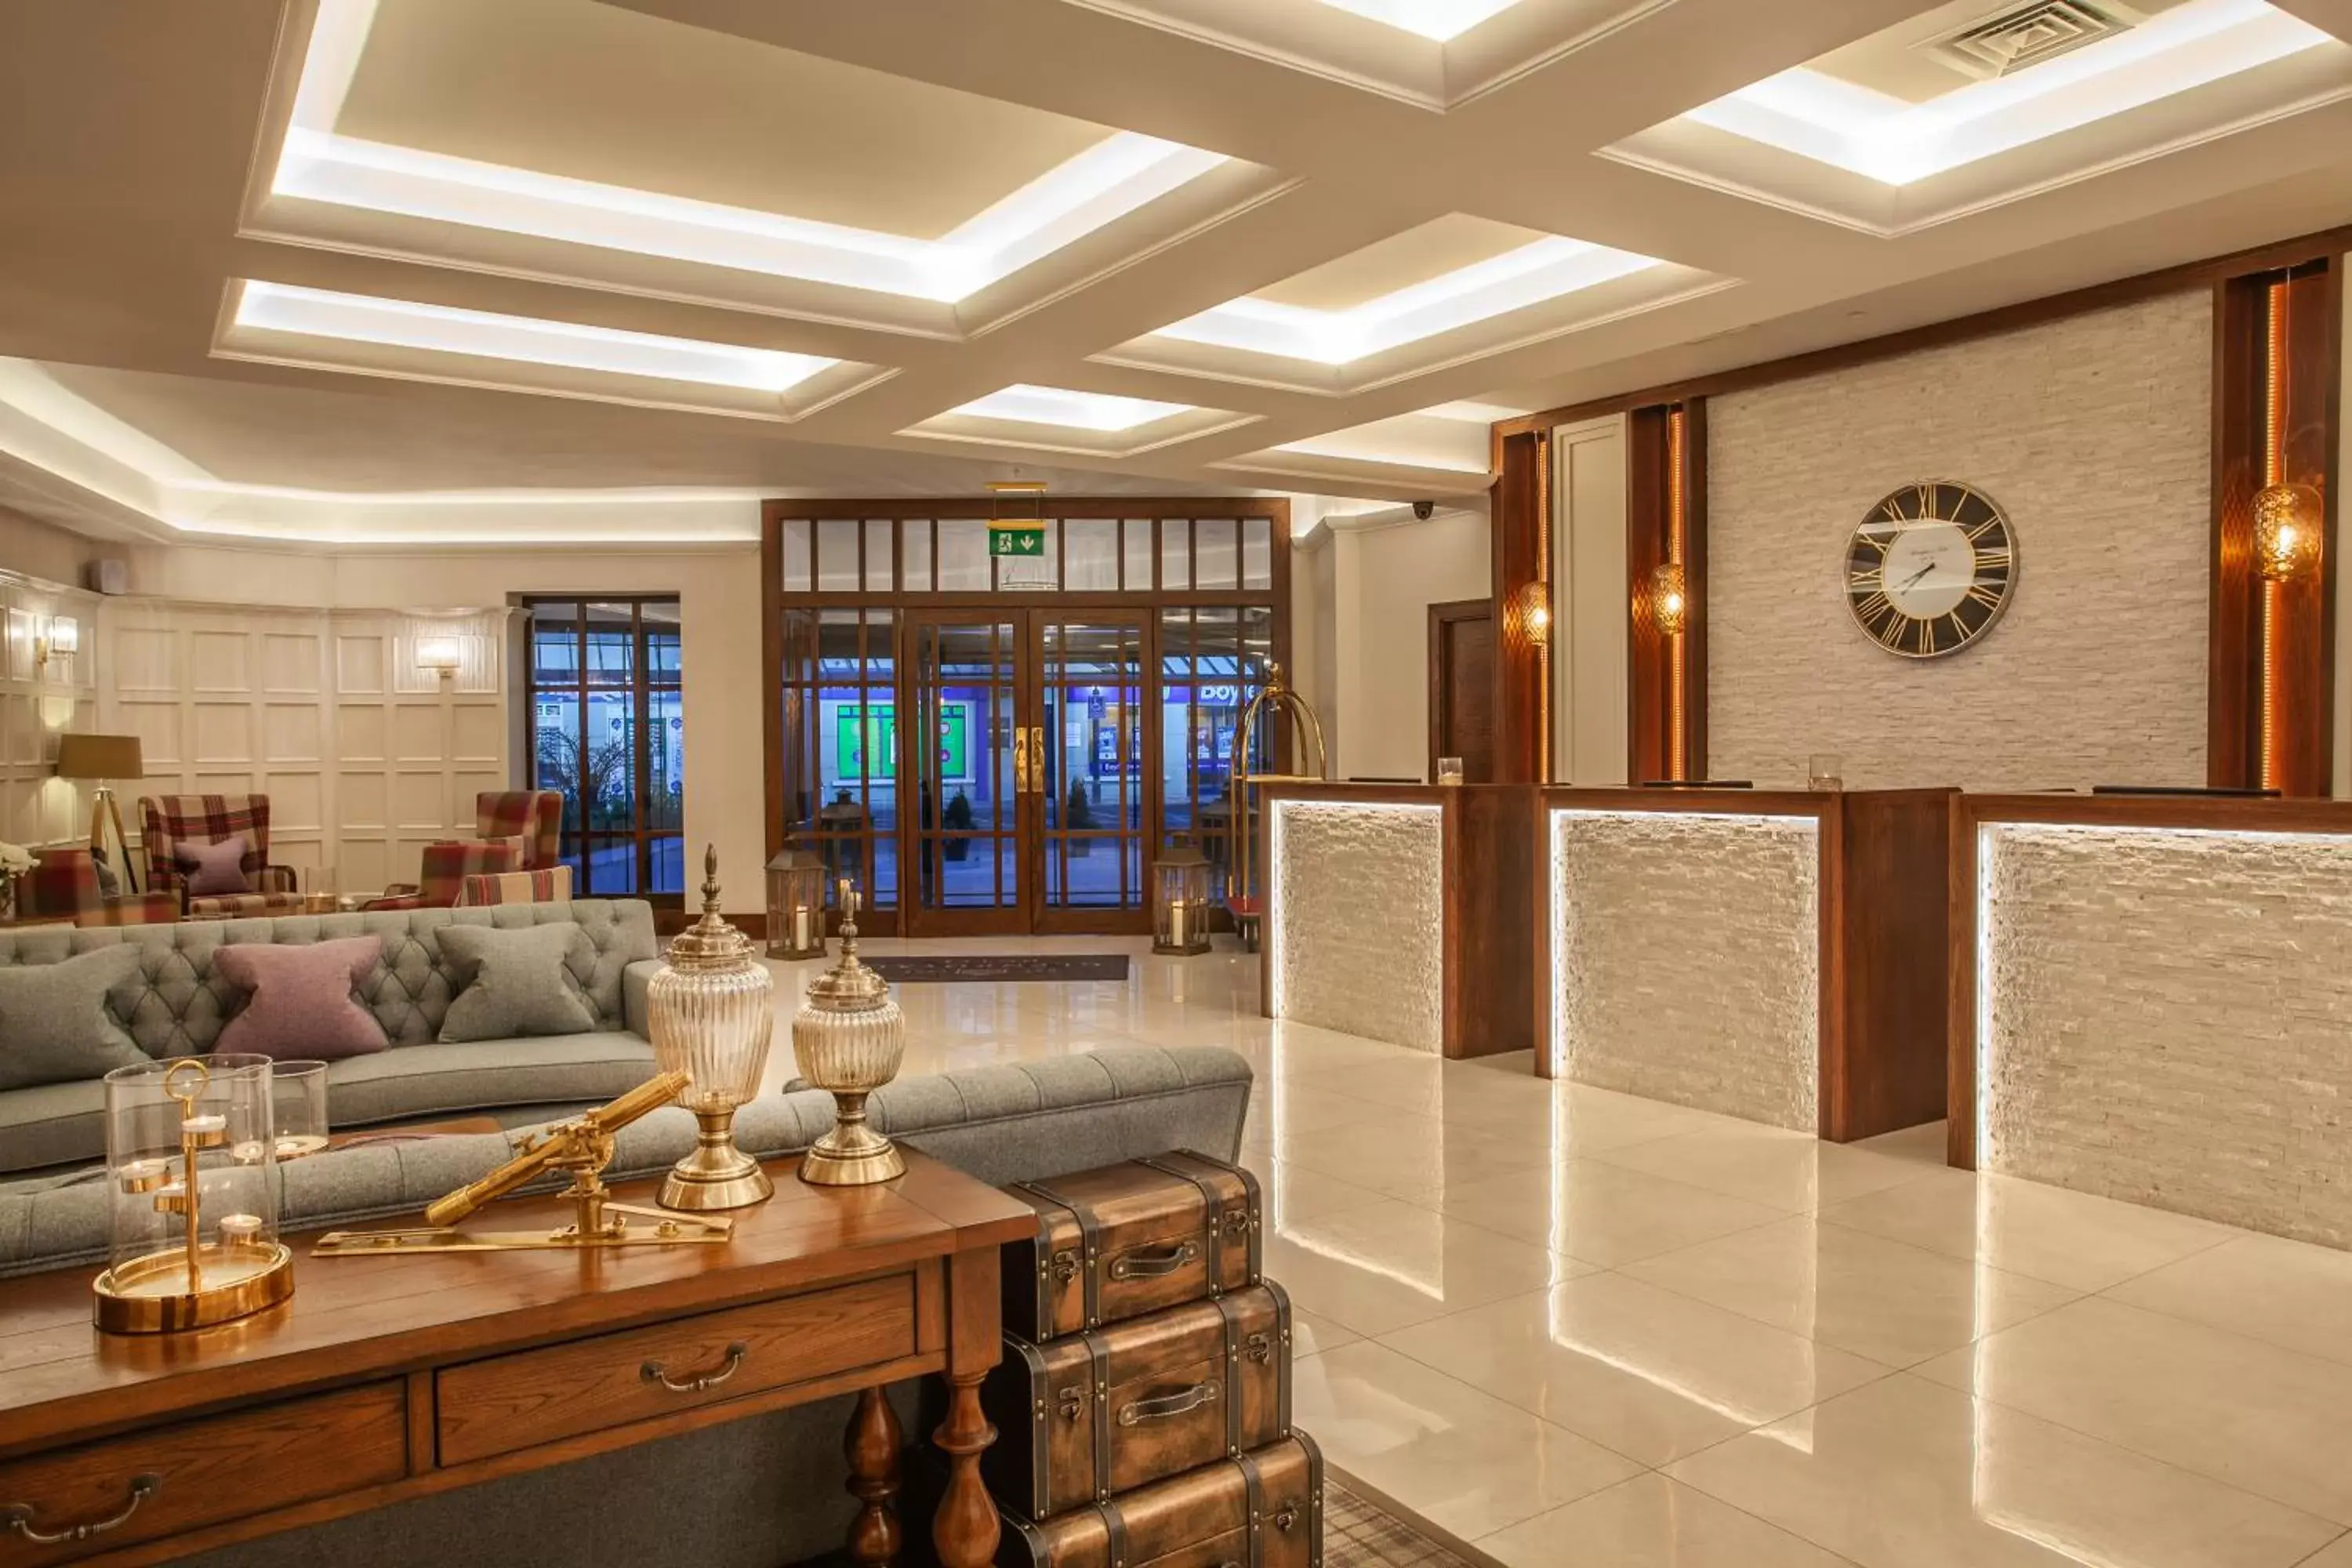 Lobby or reception, Lobby/Reception in Glenroyal Hotel